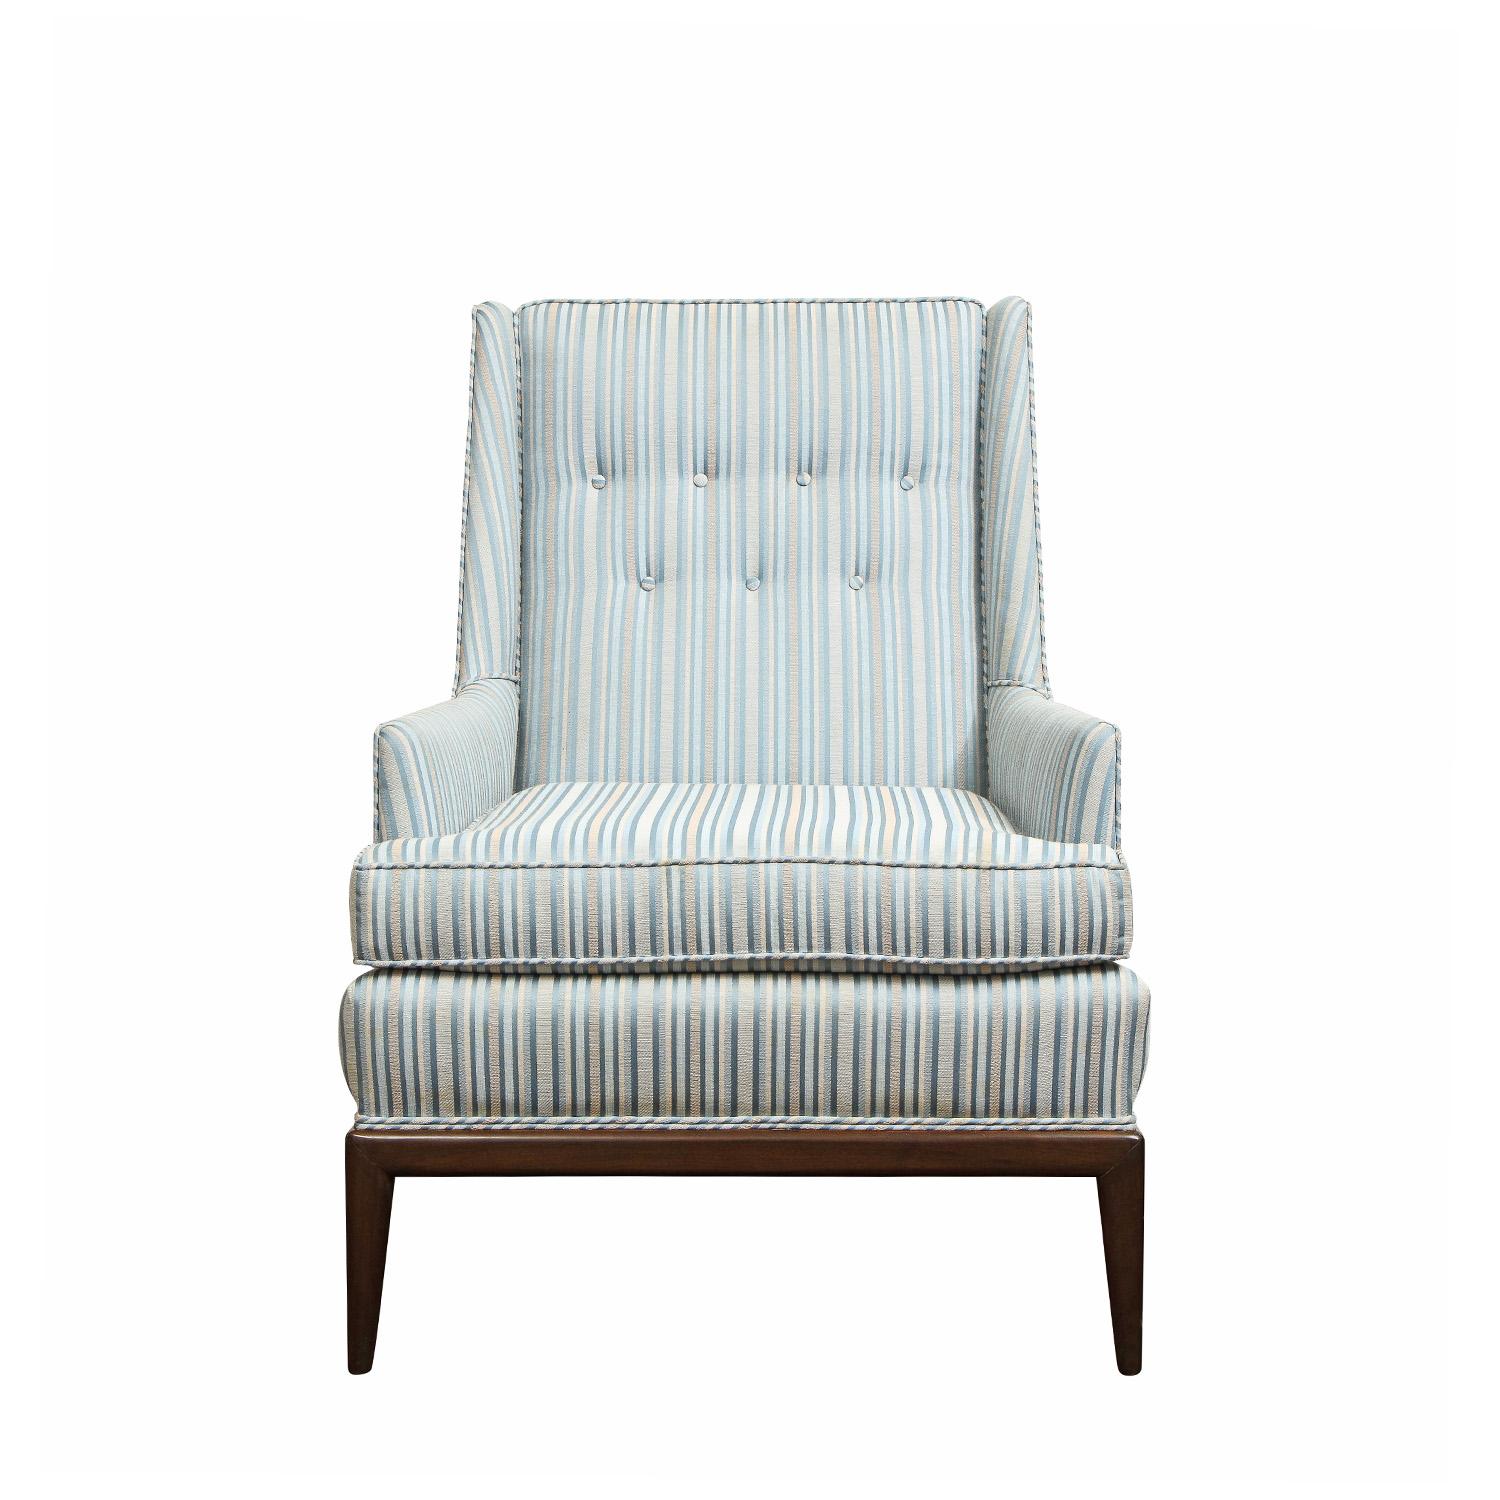 Eleganter gepolsterter Loungesessel mit Mahagonifuß und Holzverkleidung an der Rückenlehne in der Art von T.H. Robsjohn- Gibbings, Amerikaner 1950er Jahre. Dieser Stuhl ist schön gemacht und sehr bequem.